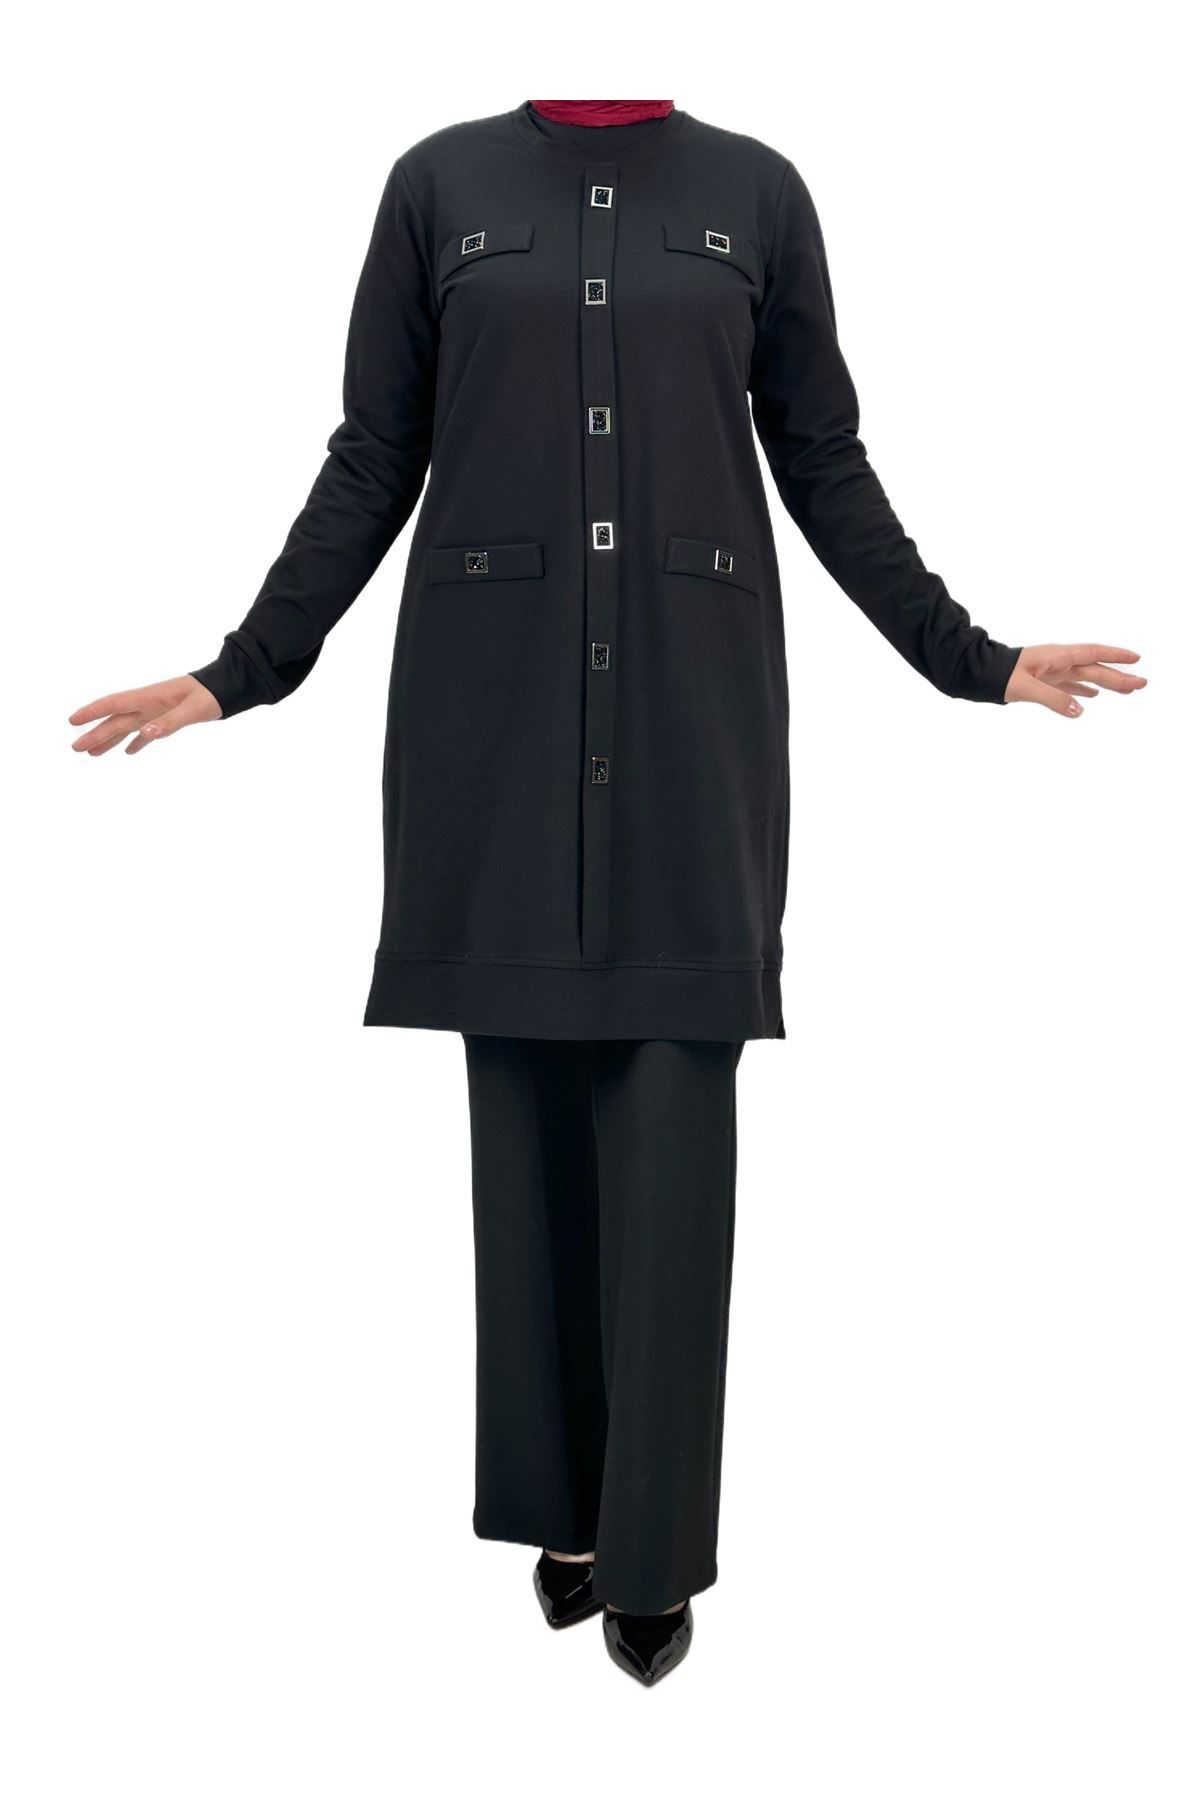 ottoman wear OTW2072 Compack Cepli Tunik Siyah